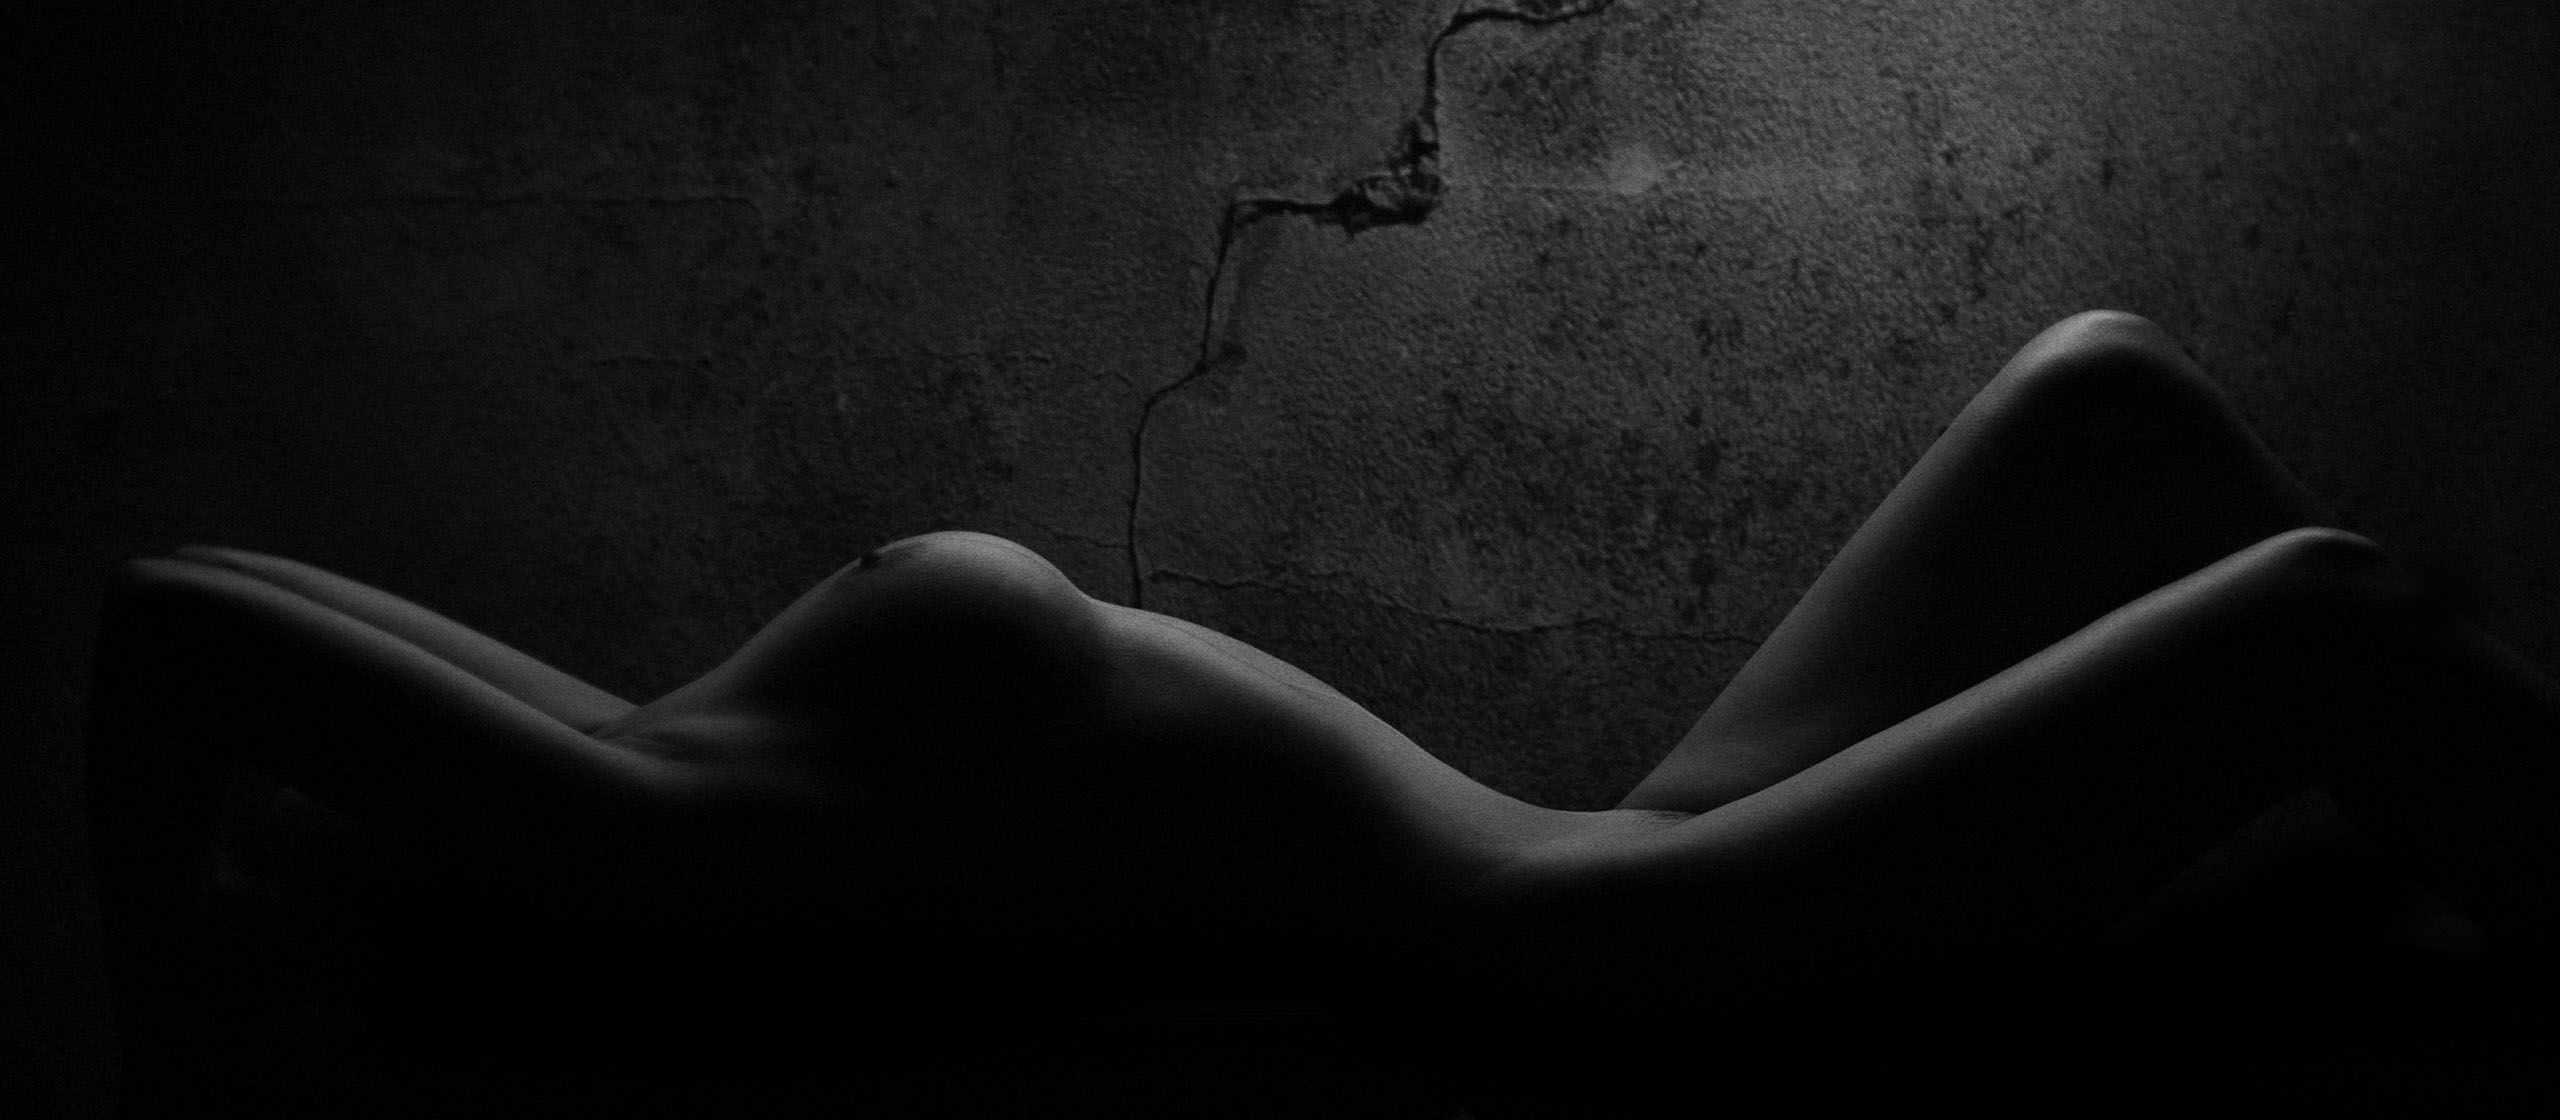 Mujer desnuda en una habitación oscura y luminosa, los senos resaltados por la luz